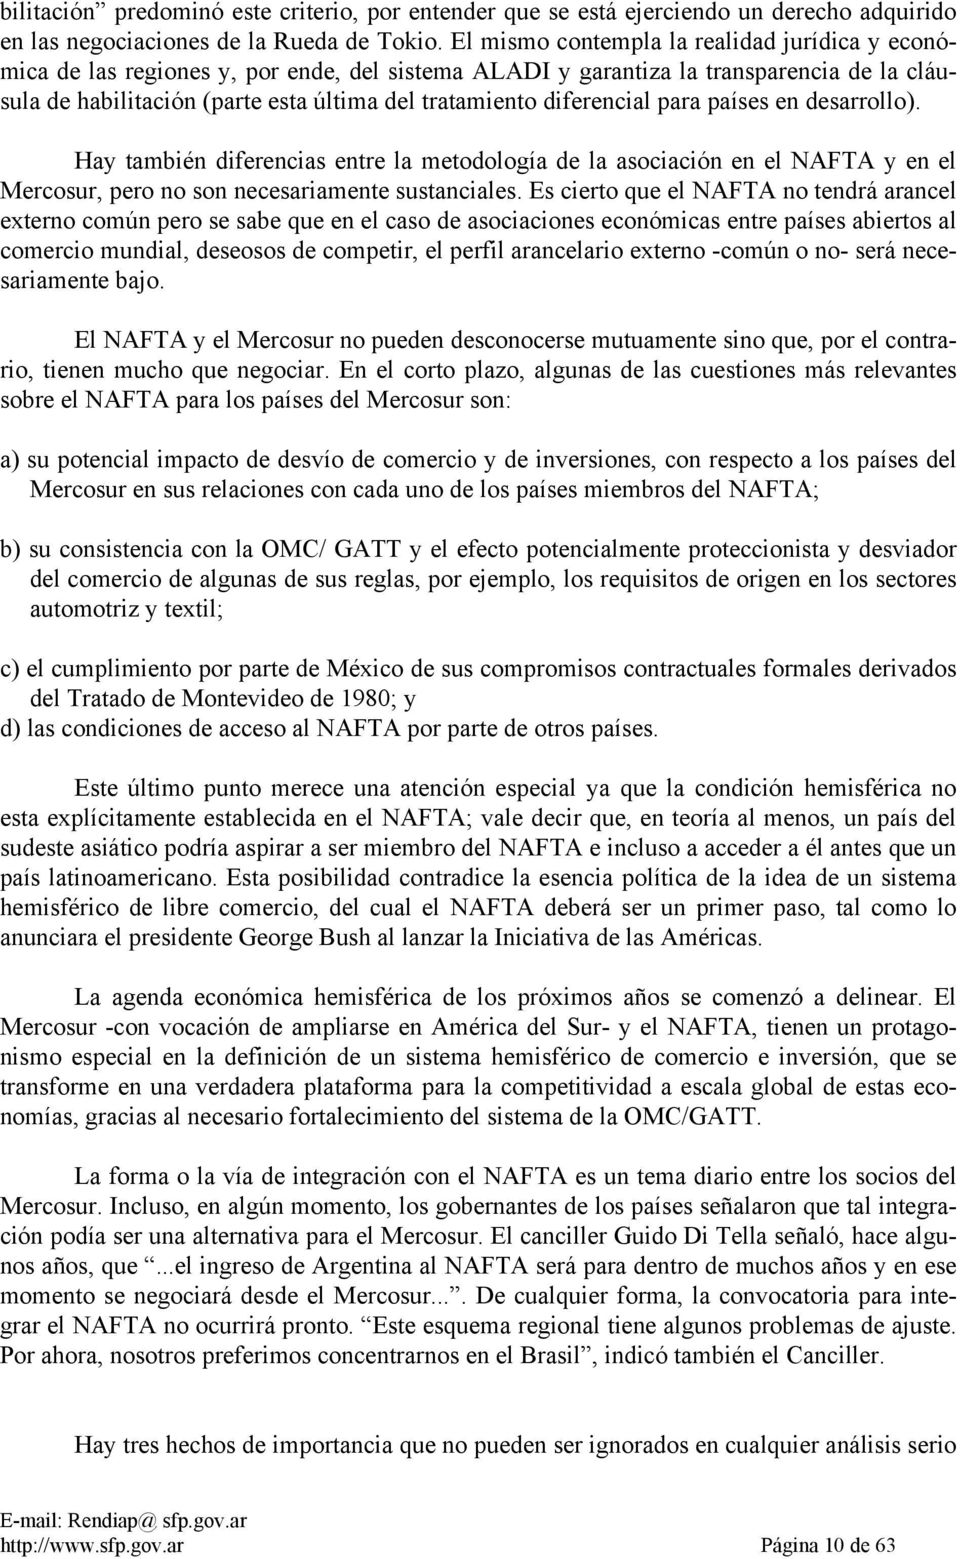 diferencial para países en desarrollo). Hay también diferencias entre la metodología de la asociación en el NAFTA y en el Mercosur, pero no son necesariamente sustanciales.